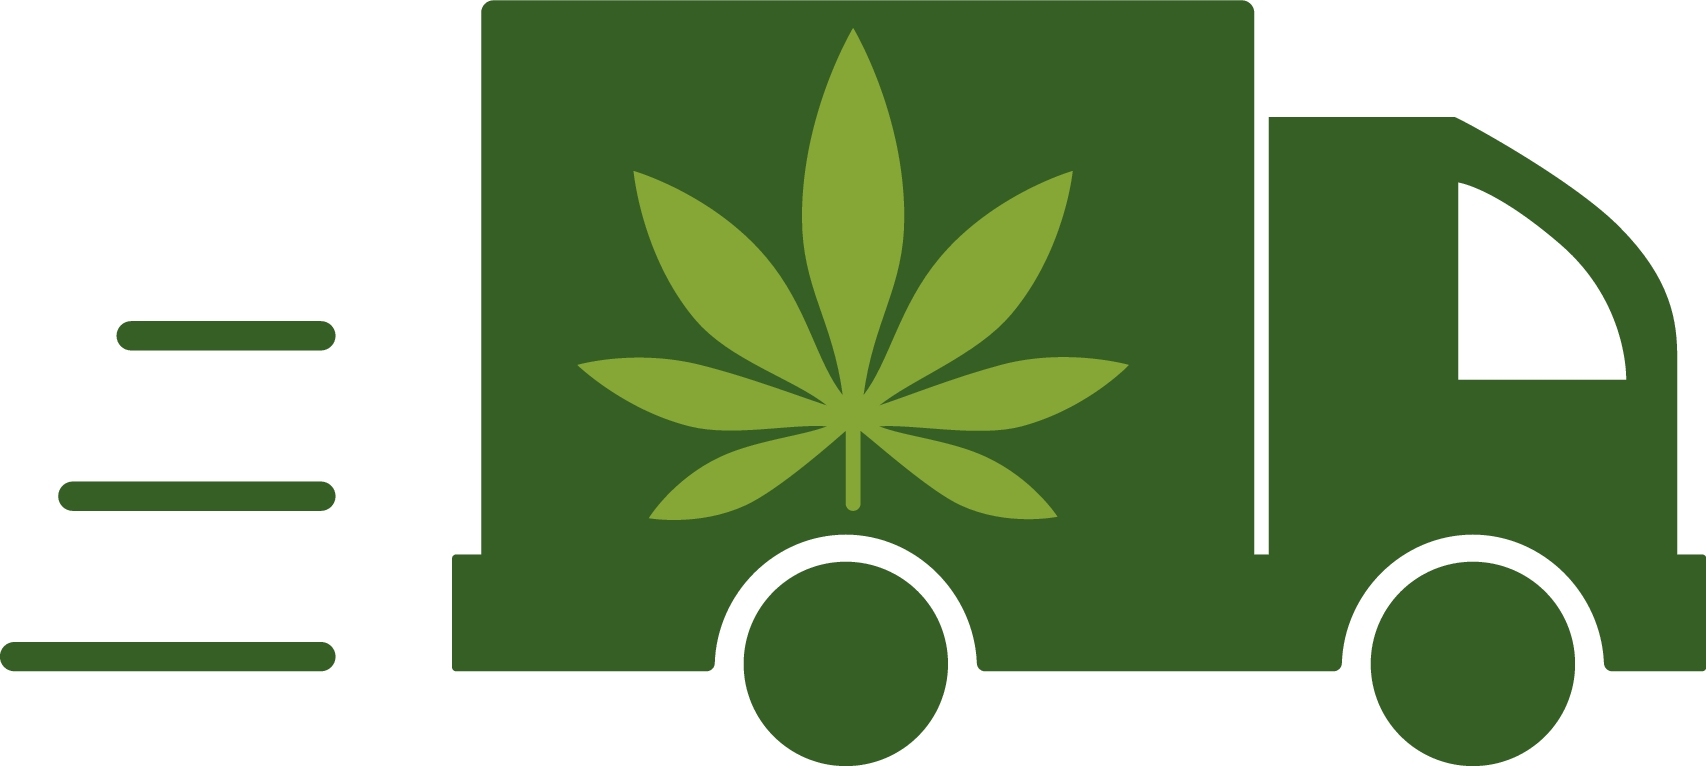 Online Dispensaries Delivering Weed in Toronto